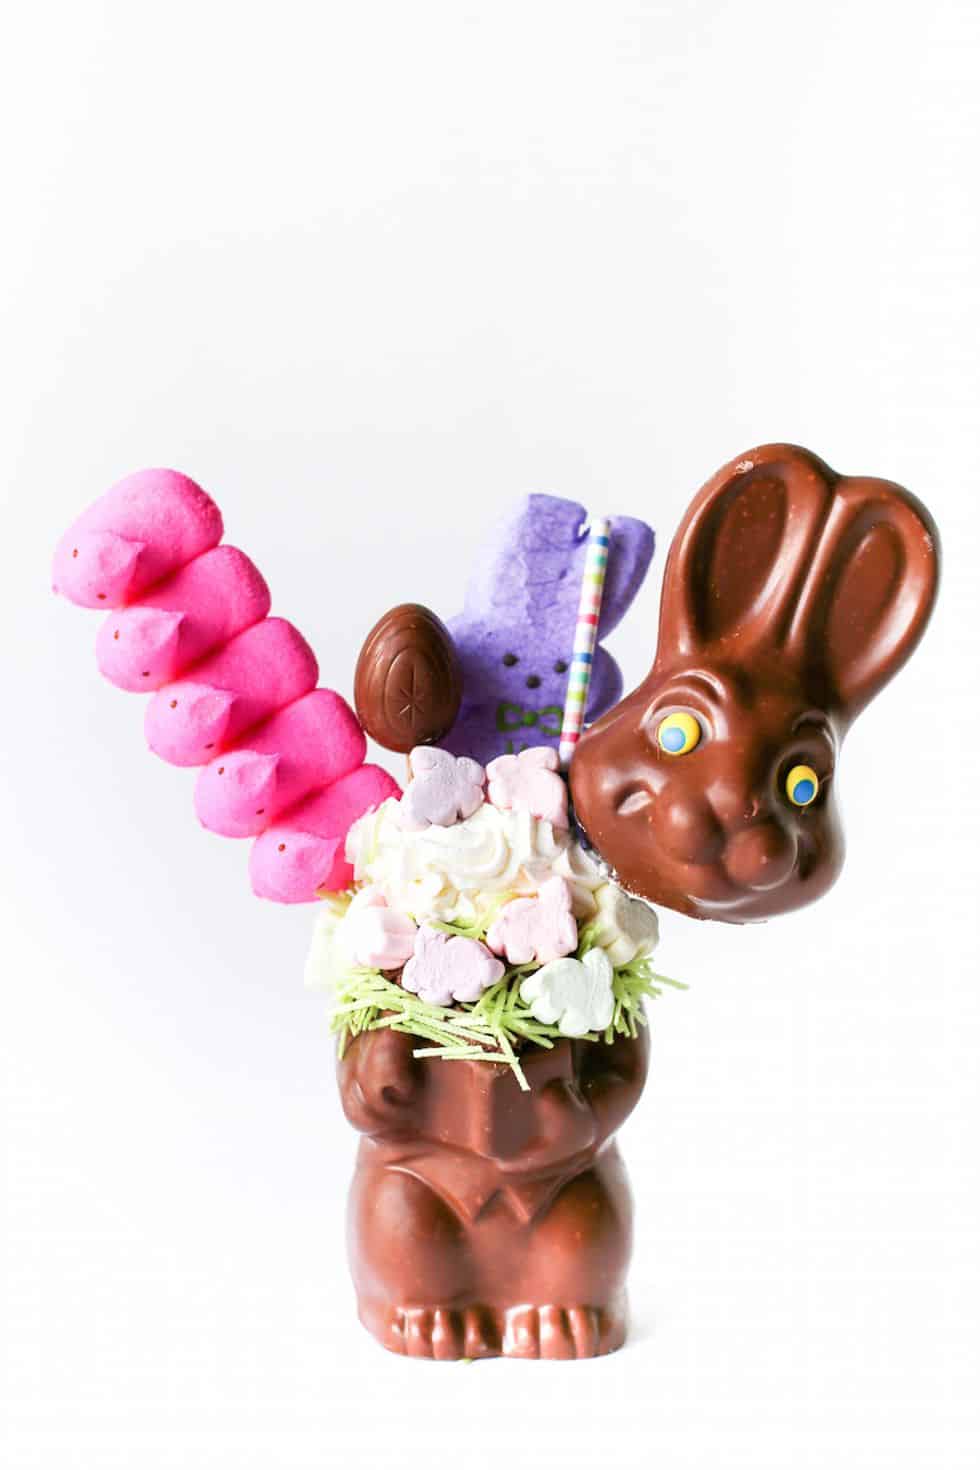 Funny Easter Dessert Idea - Easter Bunny Milkshake